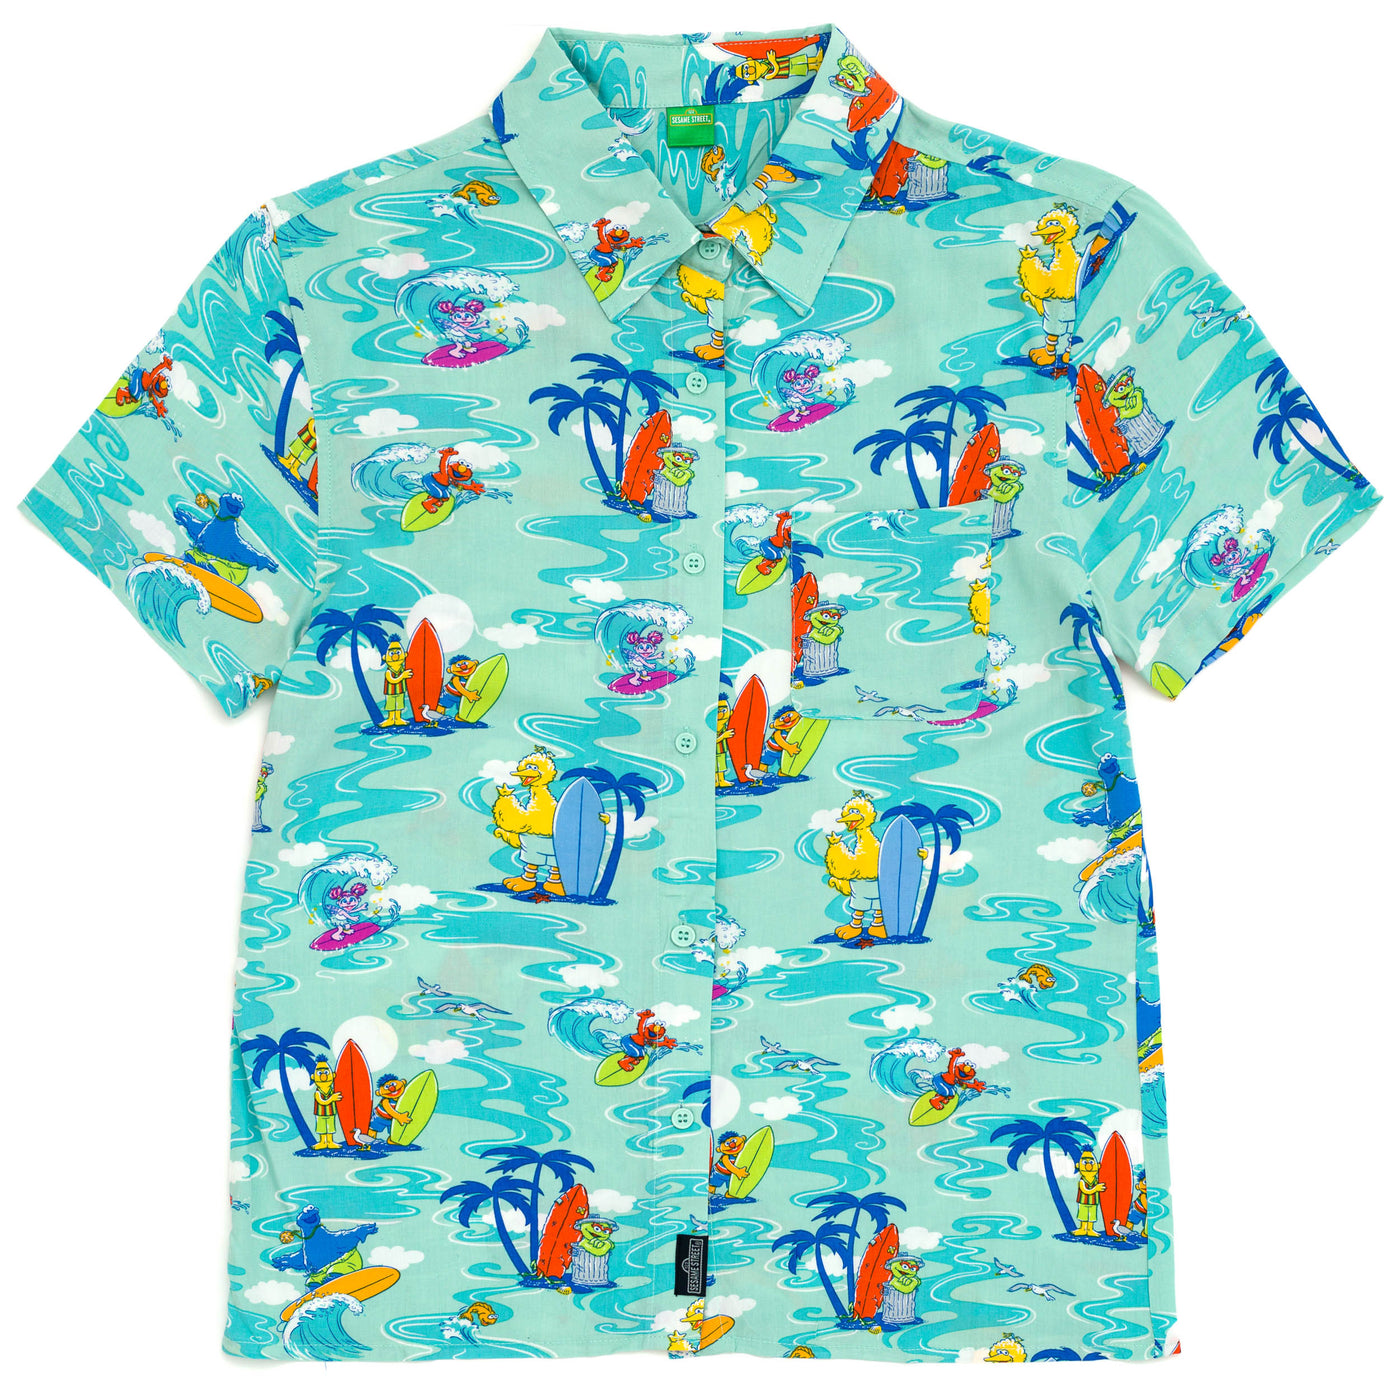 Sesame Street Abby Cadabby Bert & Ernie Big Bird Cookie Monster Elmo Matching Family Hawaiian Button Down Dress Shirt Adult